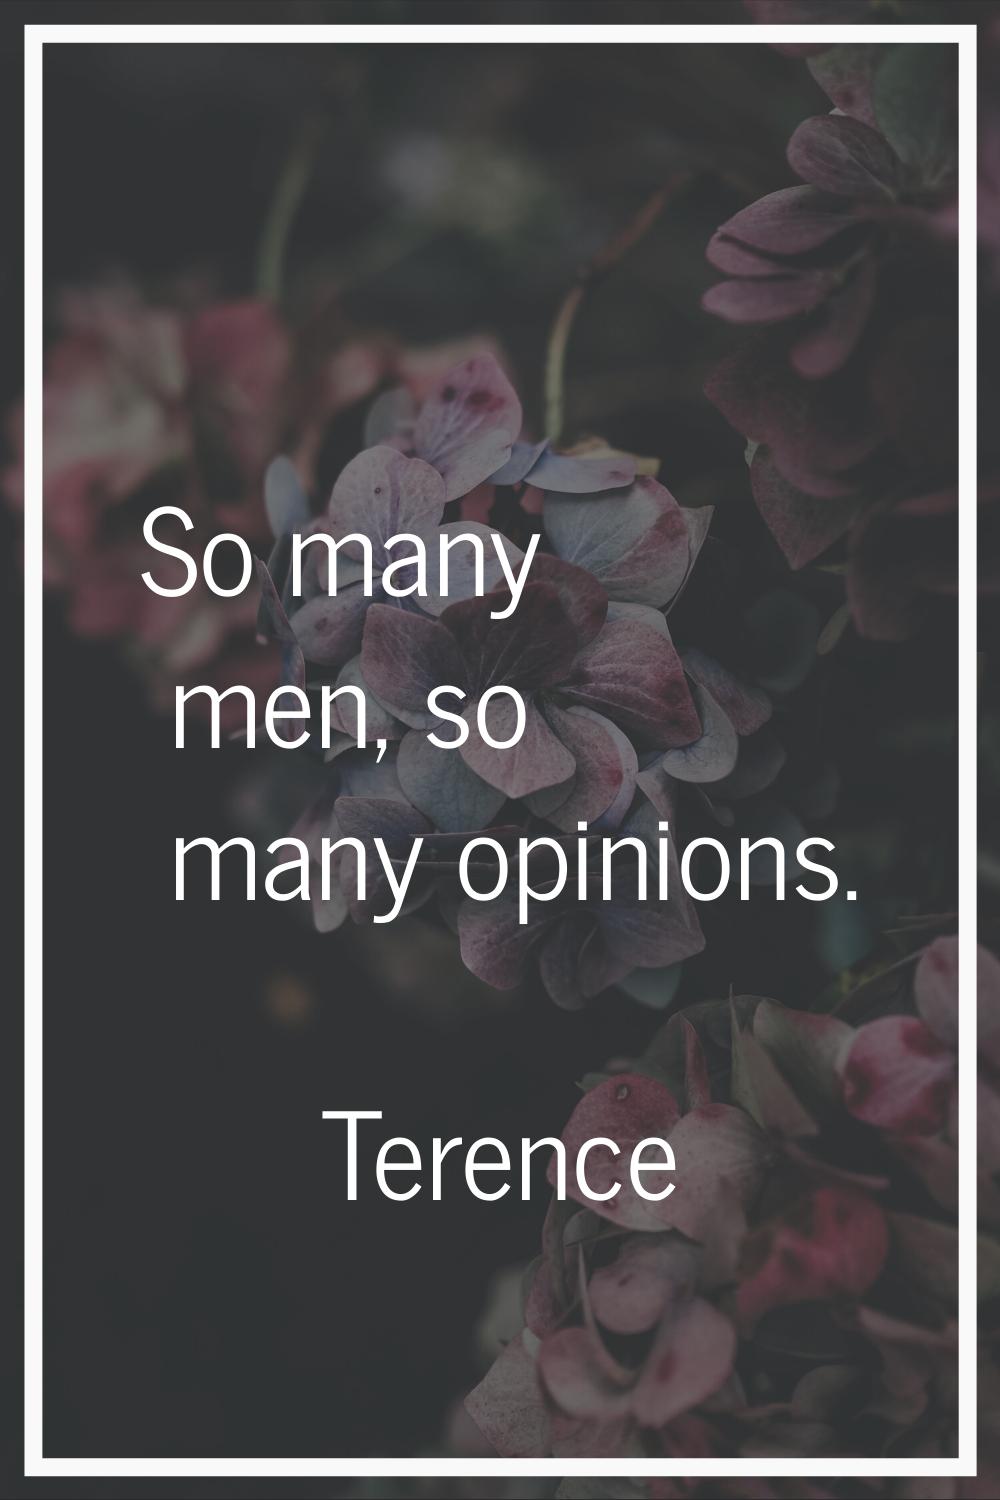 So many men, so many opinions.